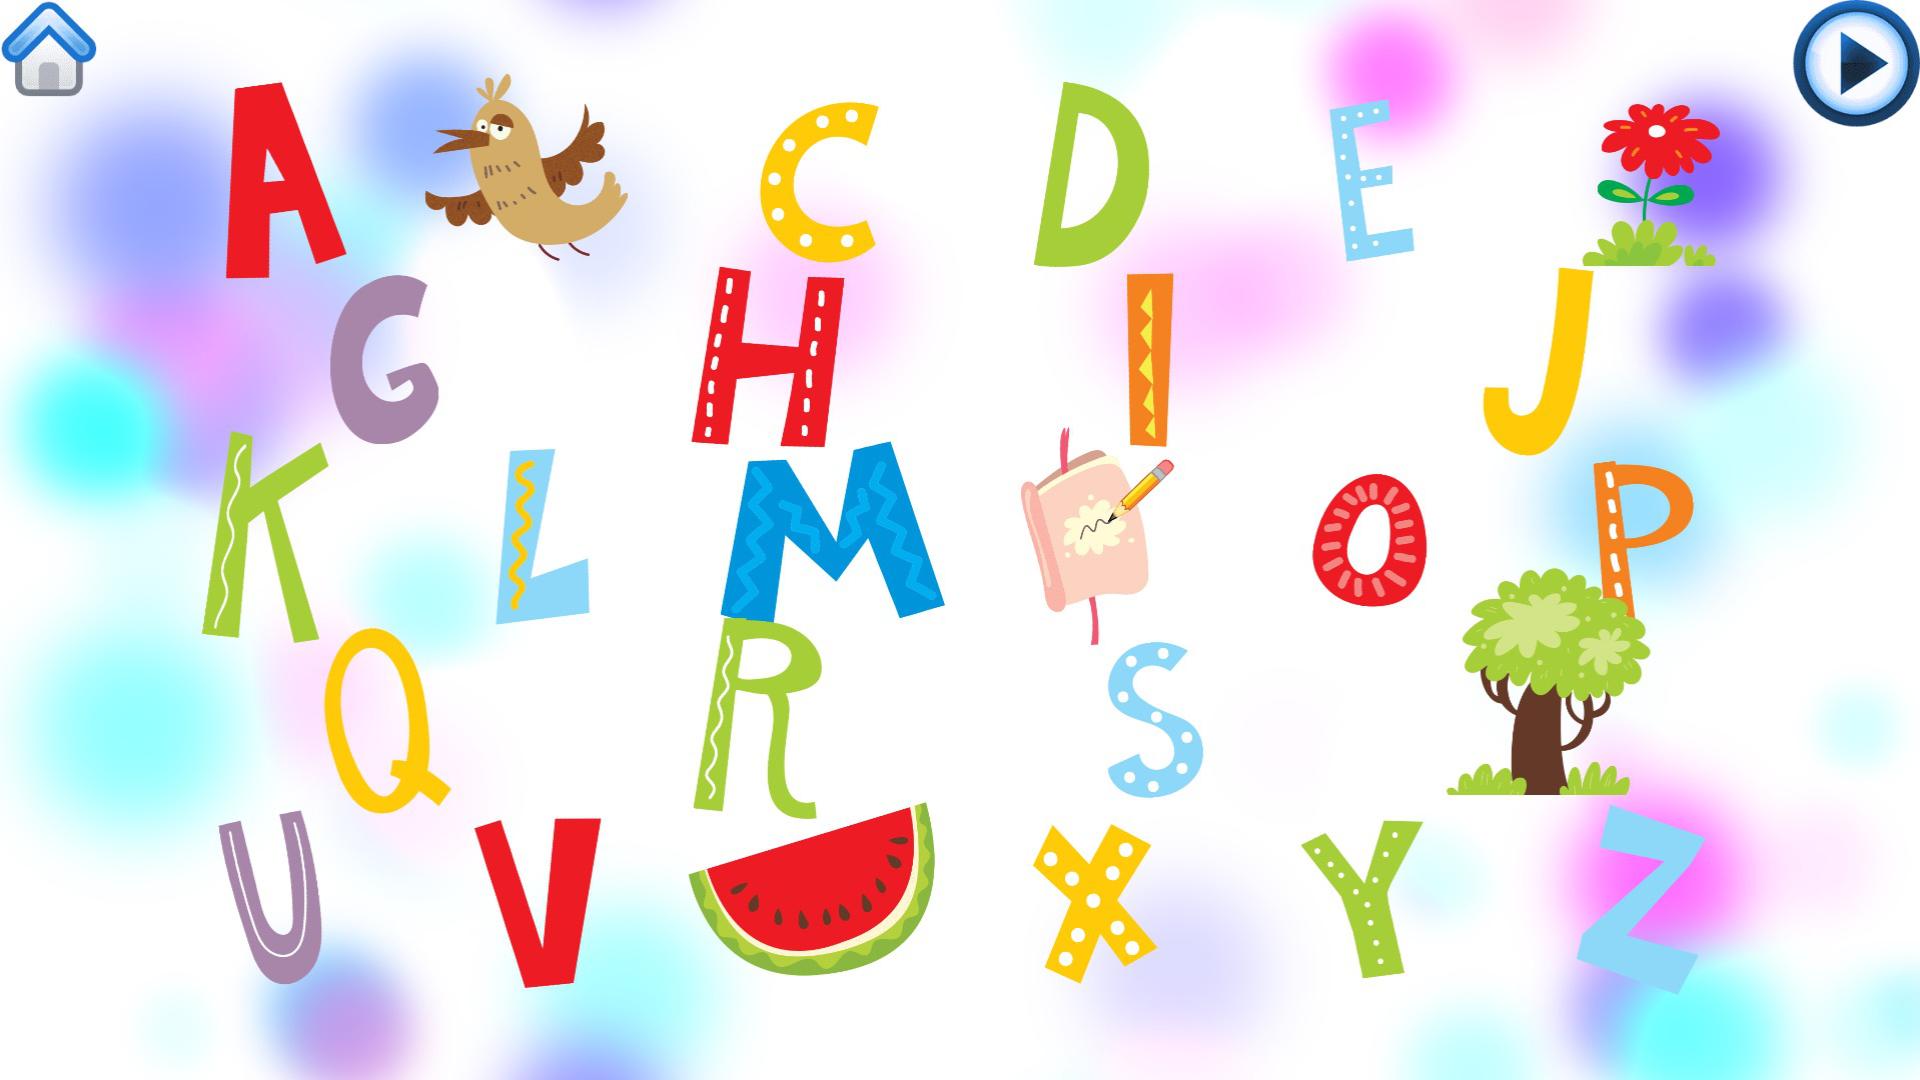 ABC. ABC алфавит. Праздничный алфавит. ABC для детей.